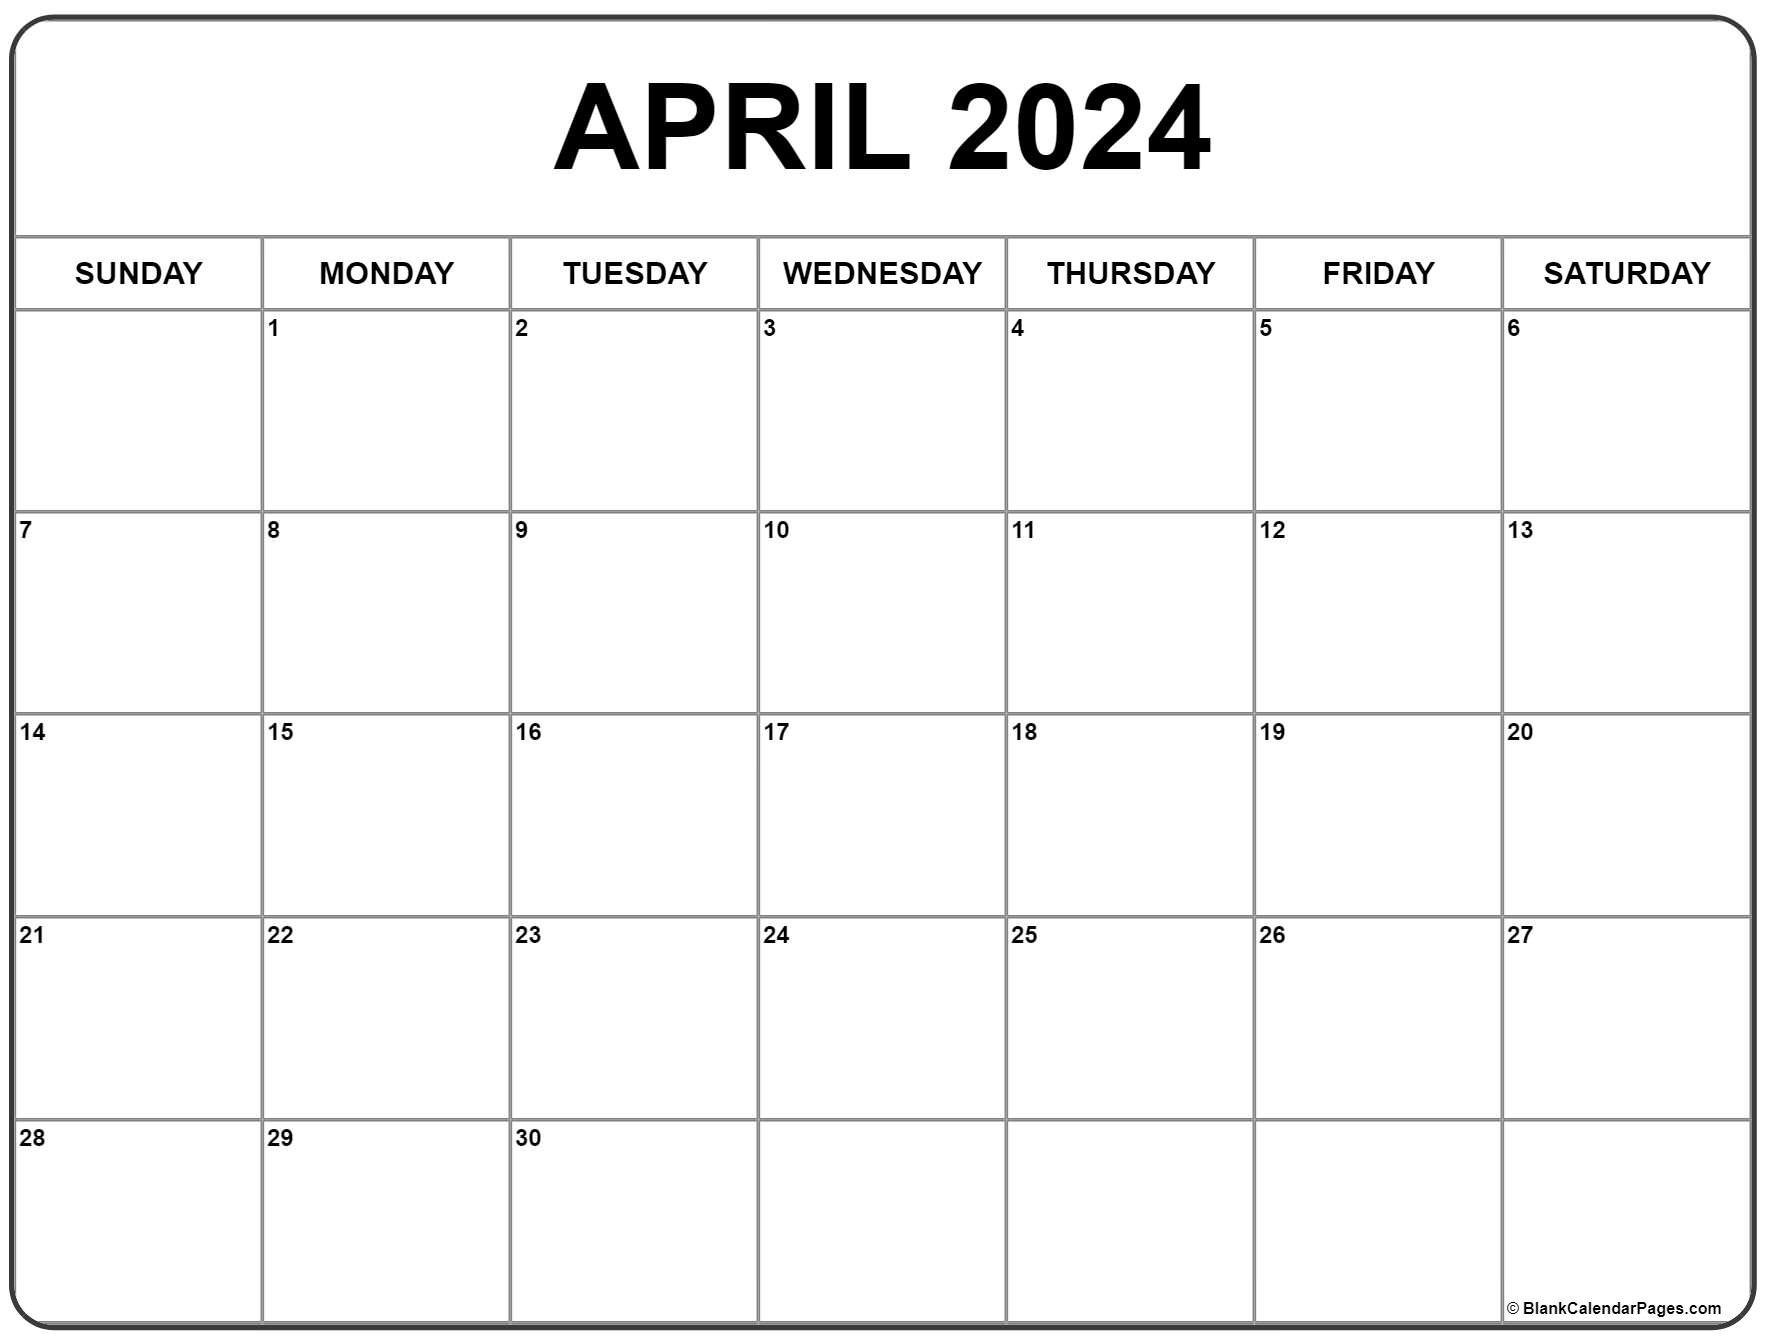 April 2024 Calendar | Free Printable Calendar for April Calendar 2024 Printable Free